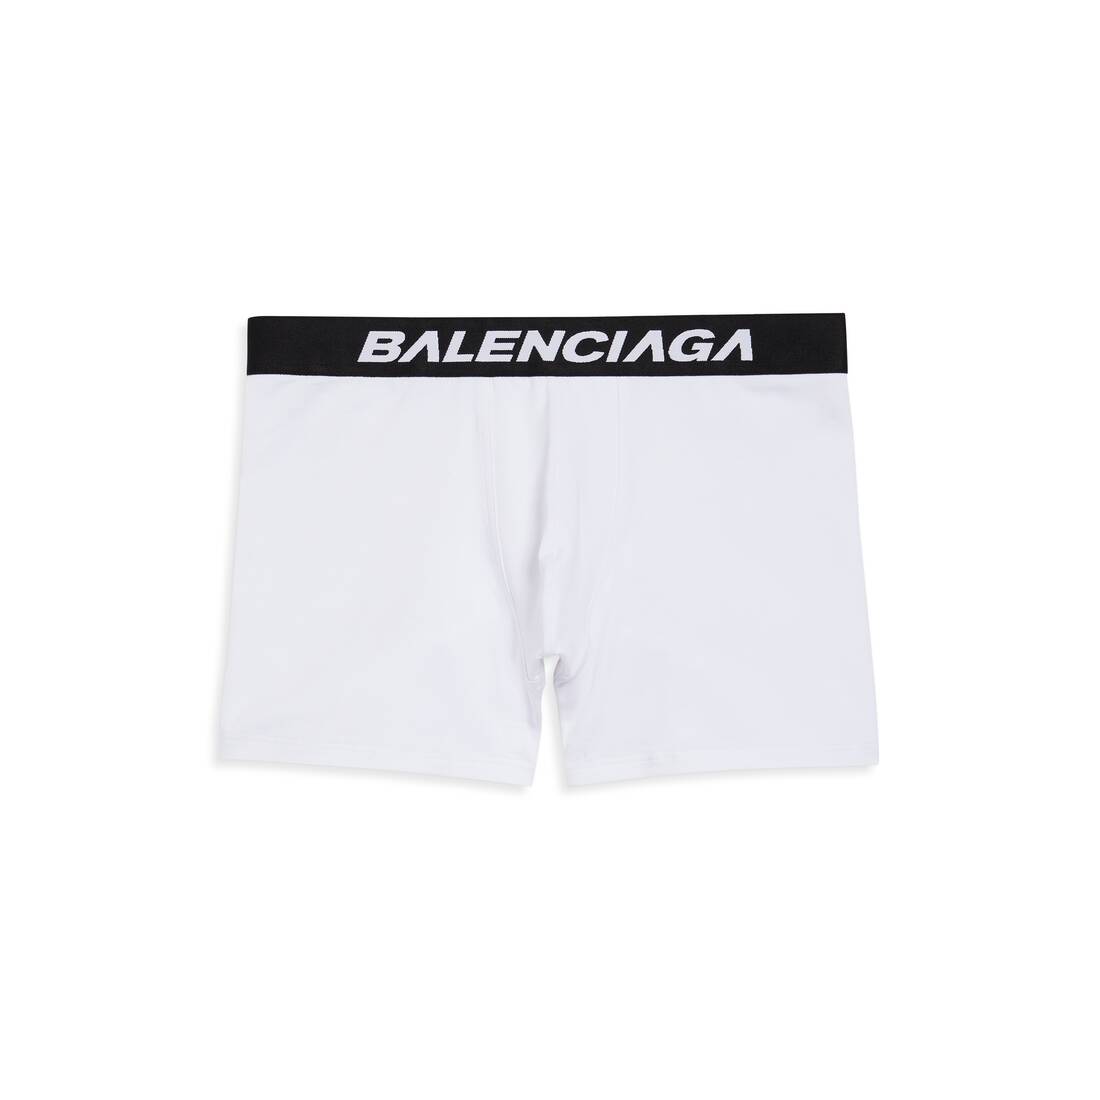 Balenciaga Racer Soft Cotton Boxer Briefs - Black